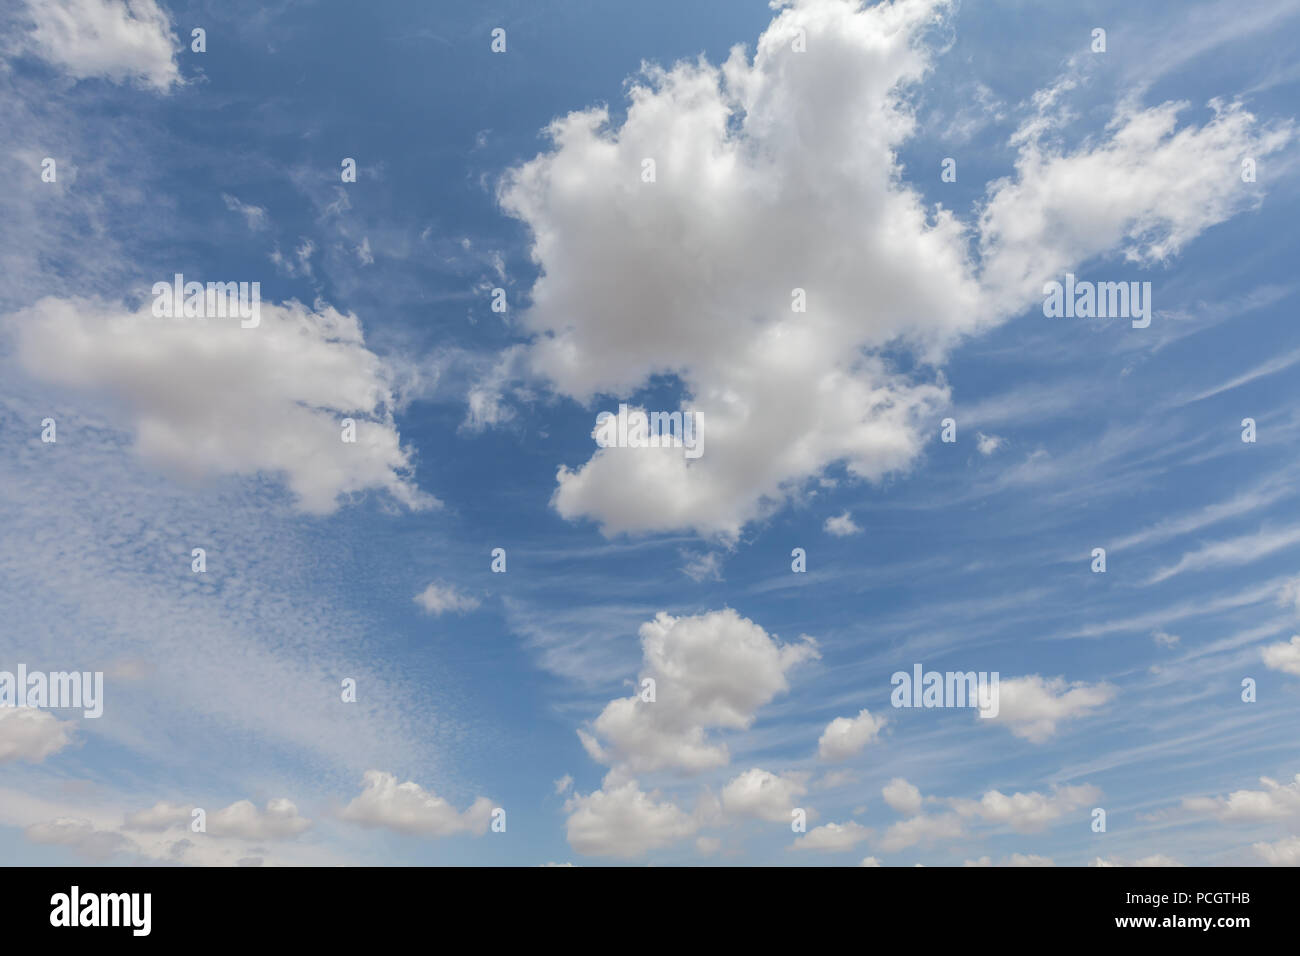 Schöne weiße Wolken und blauer Himmel über England UK. Flauschig und wispy cloudscape Hintergrund Stockfoto